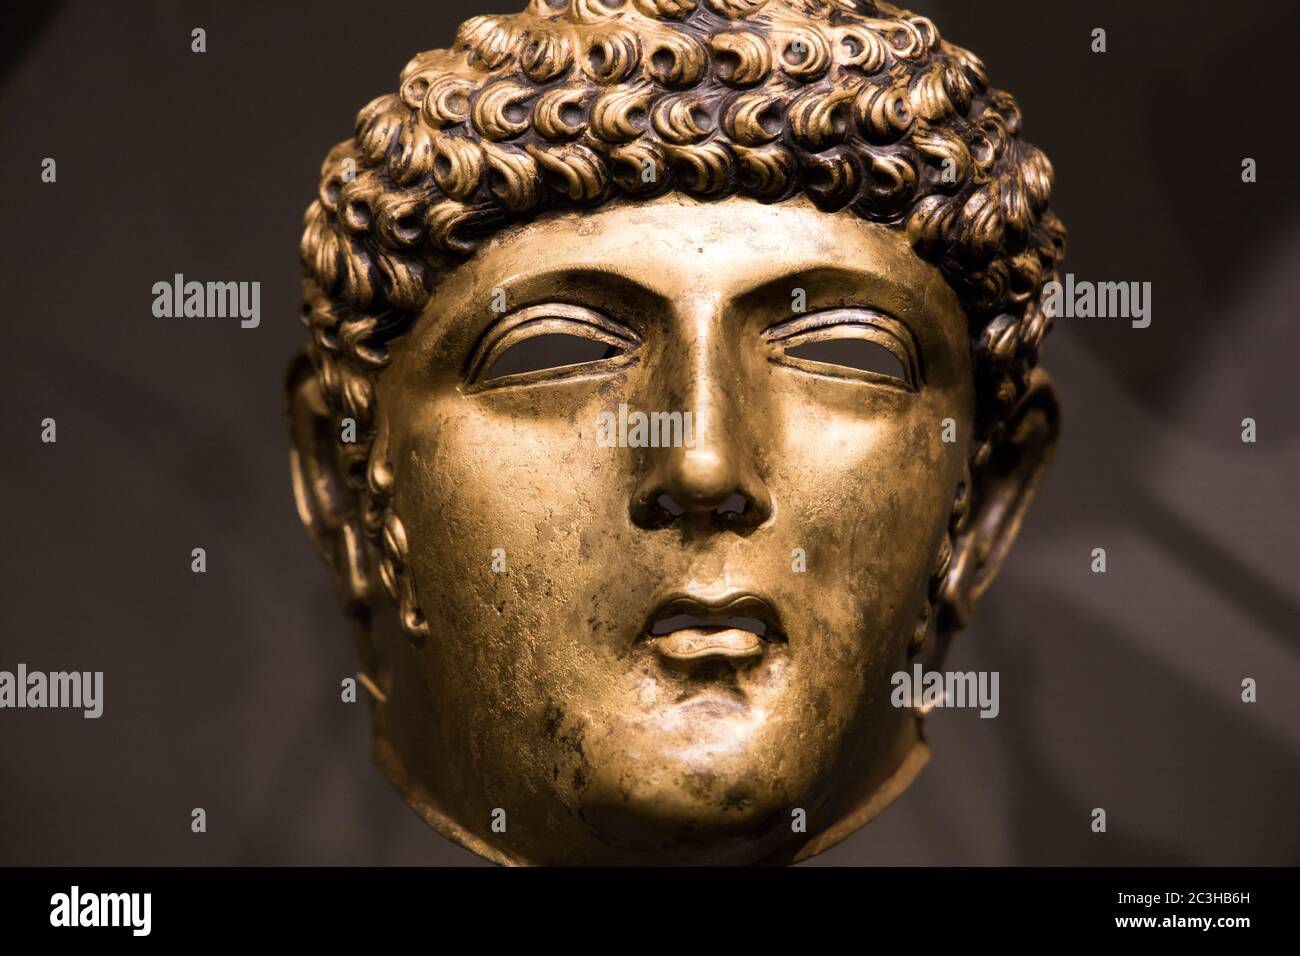 Leiden, pays-Bas - 04 JANVIER 2020 : gros plan d'un masque équestre romain de bronze de la période romaine néerlandaise (80-125 AD). Un masque Gordon. Banque D'Images